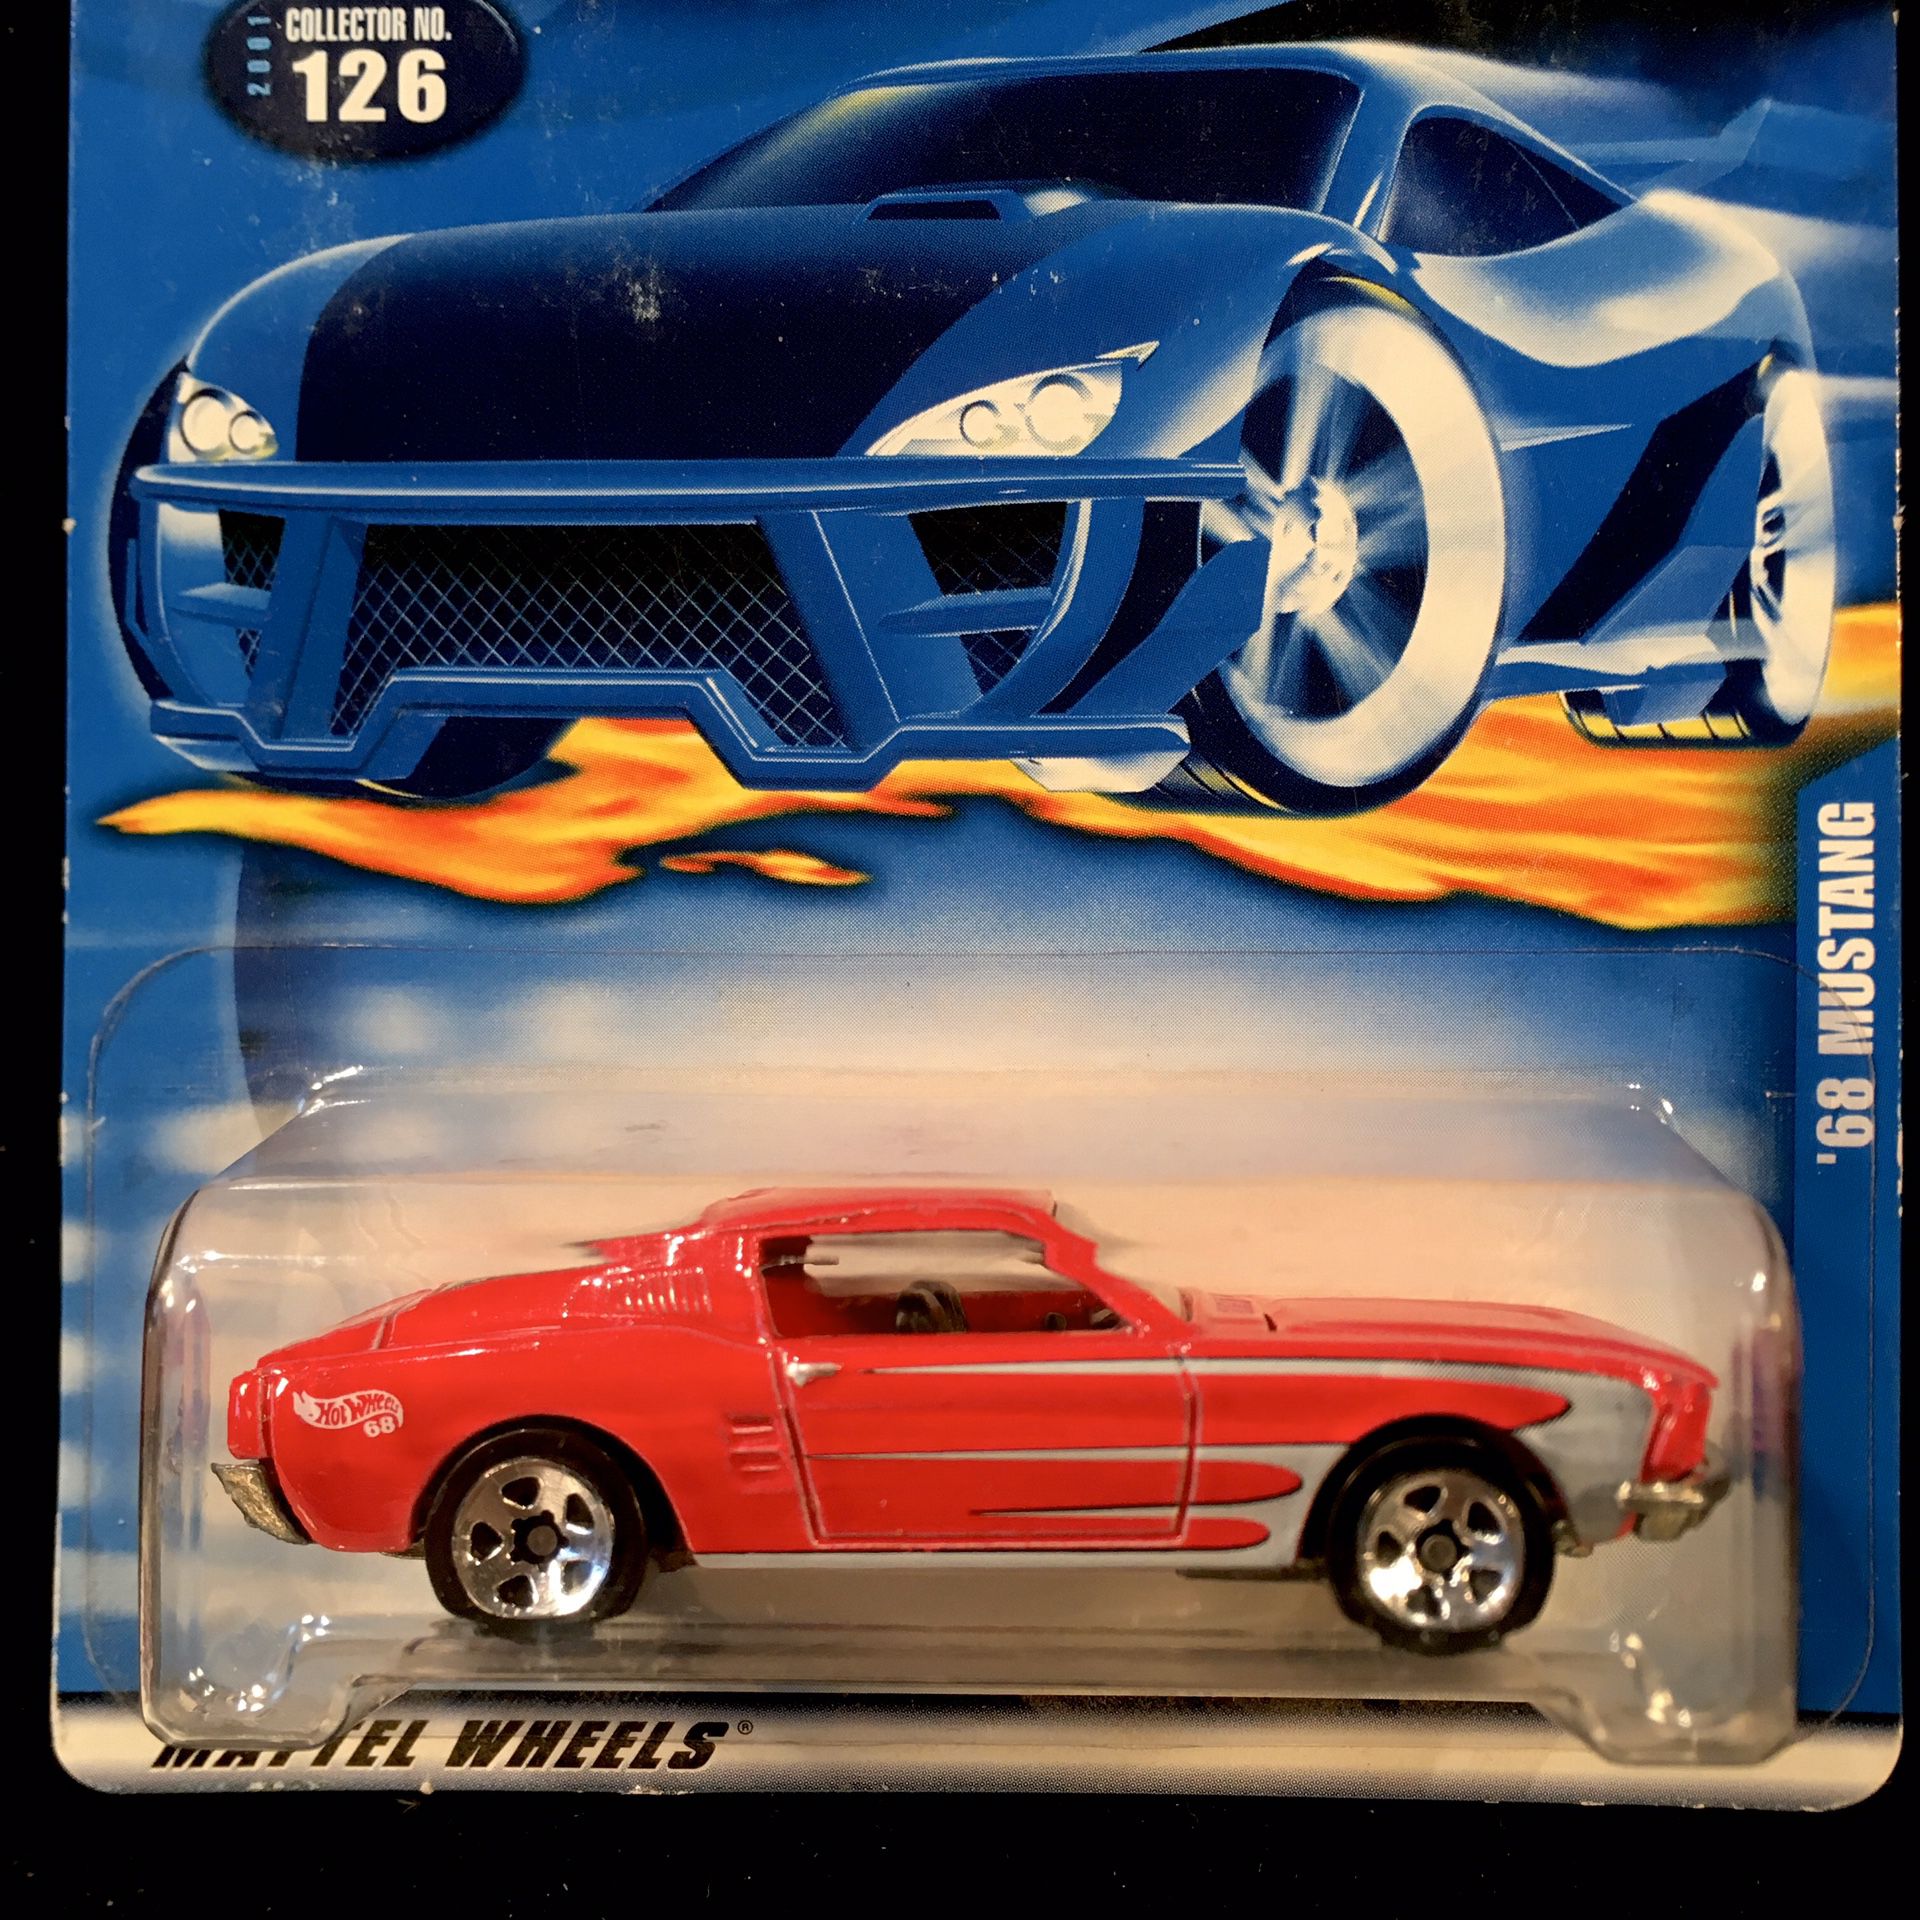 Hot Wheels 2001 Collector #126 ‘68 Mustang • Metal/Metal